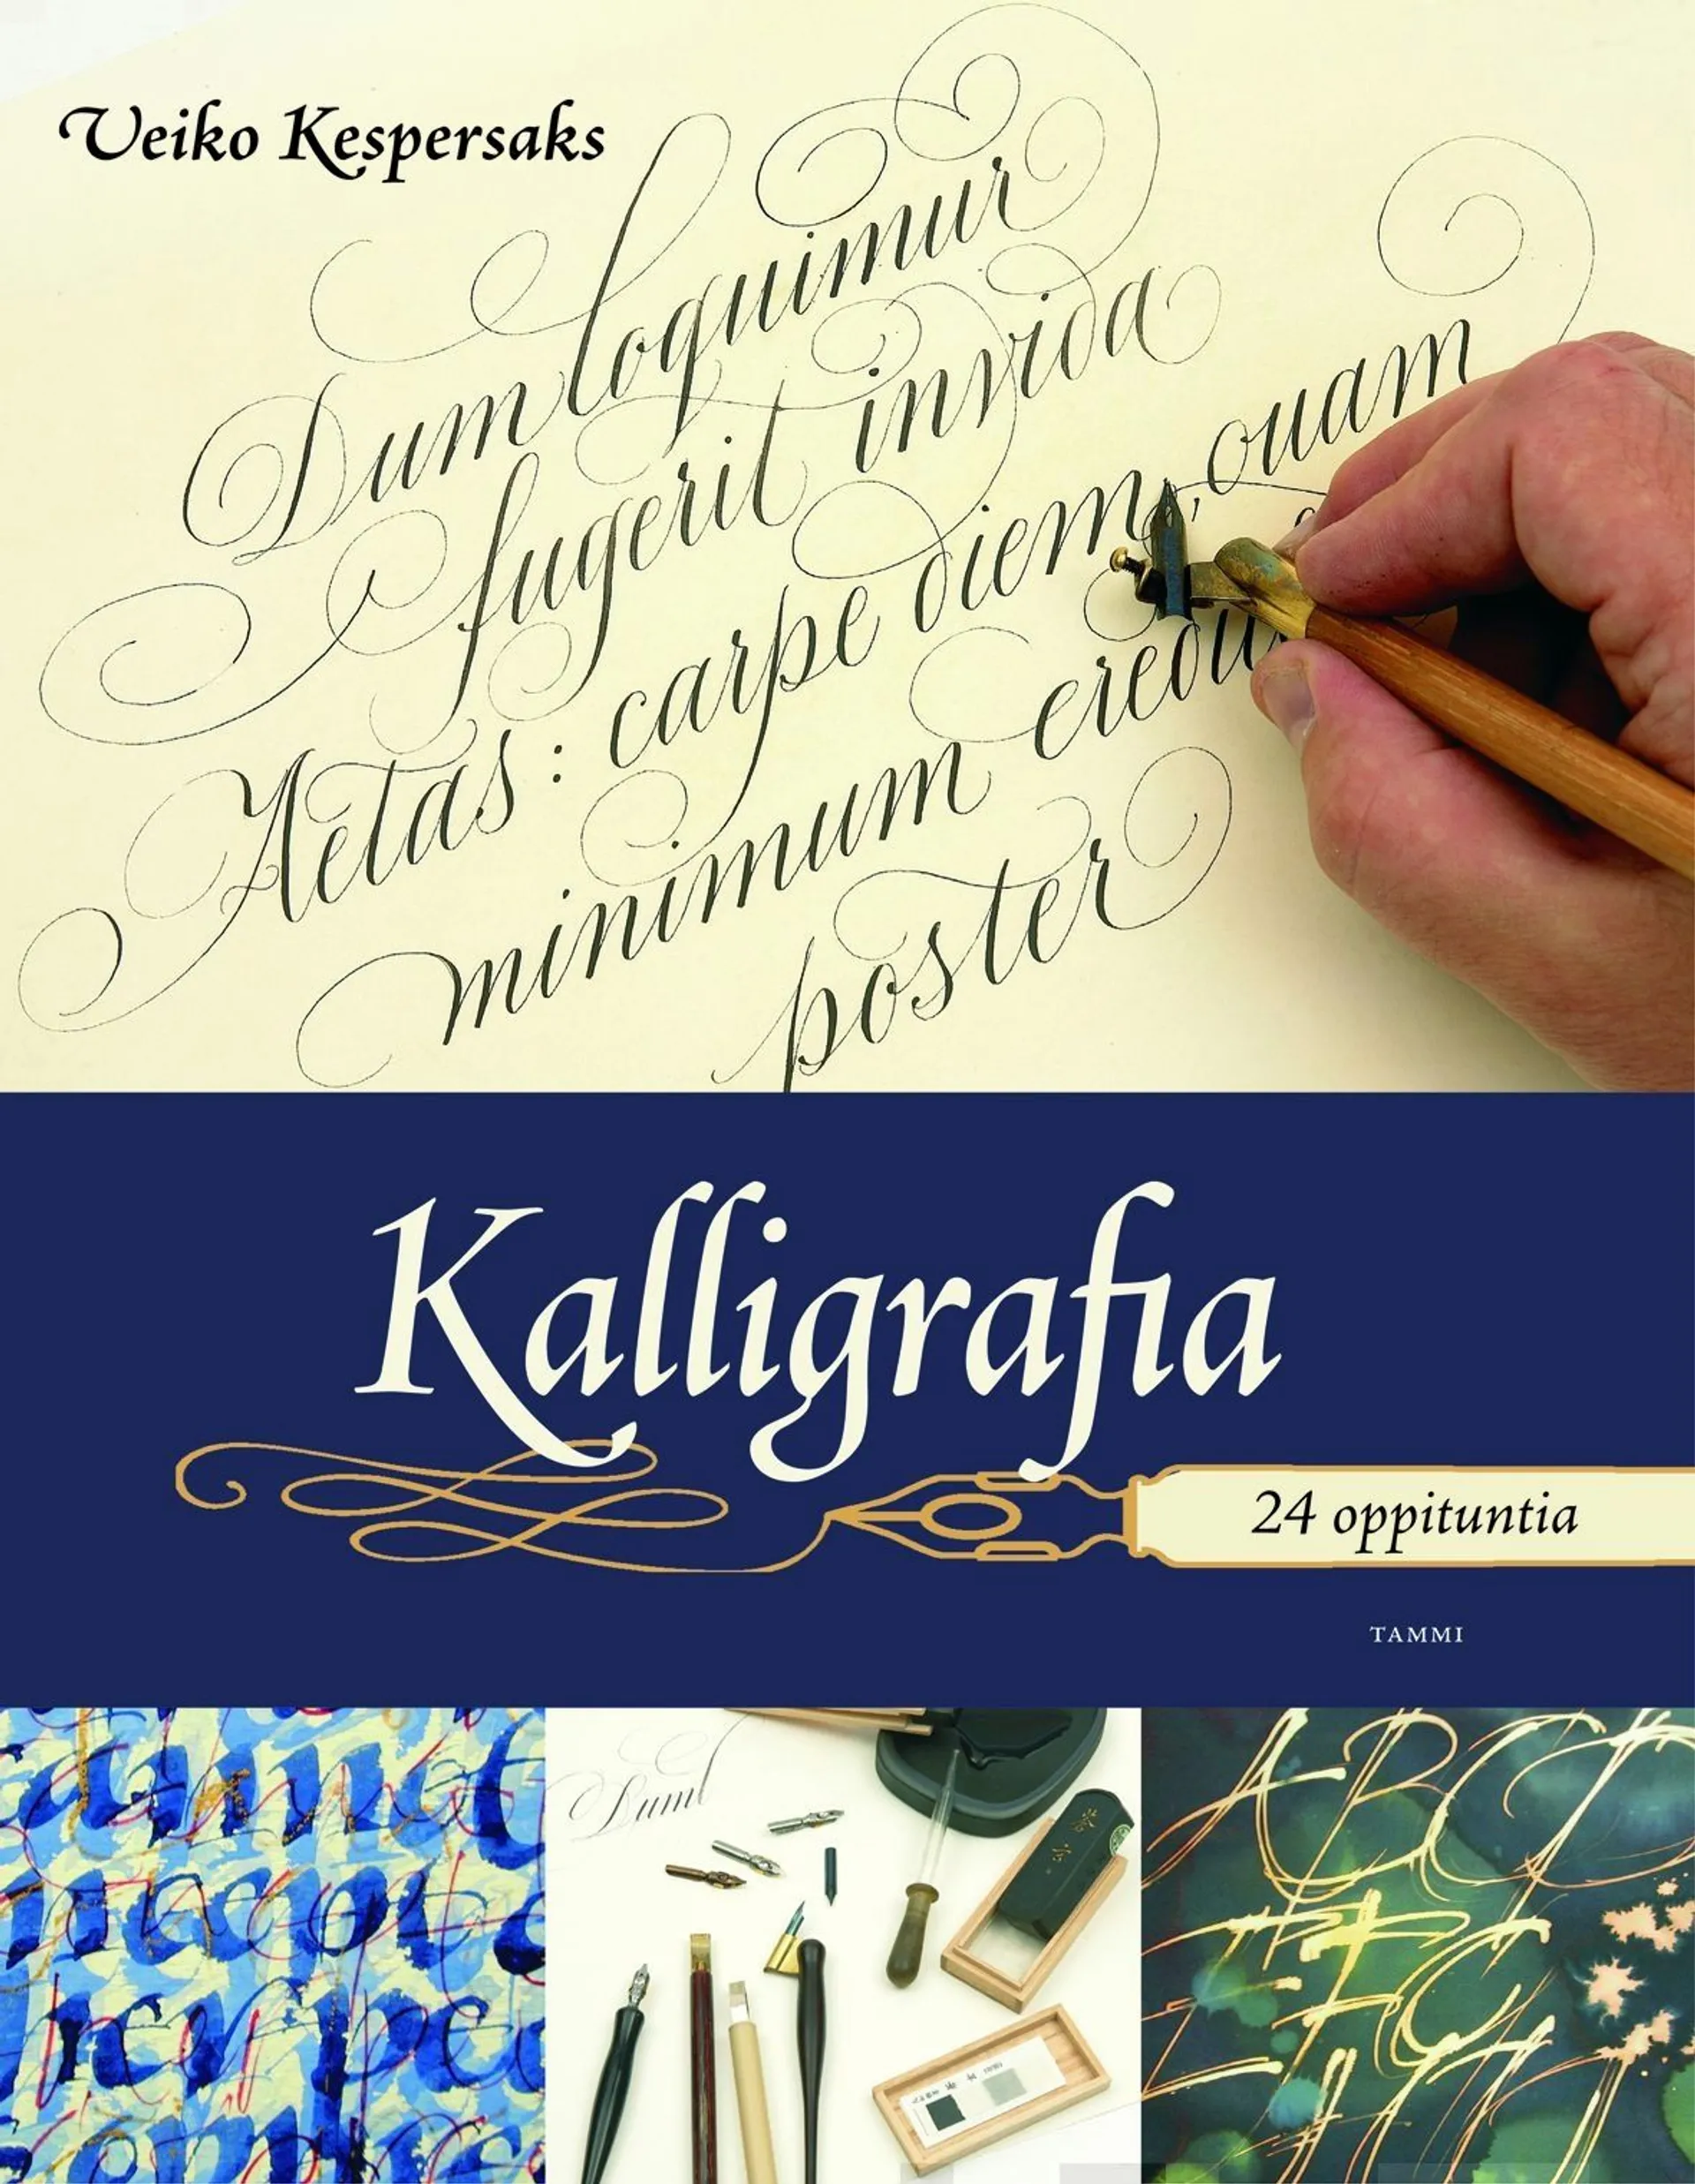 Kespersaks, Kalligrafia